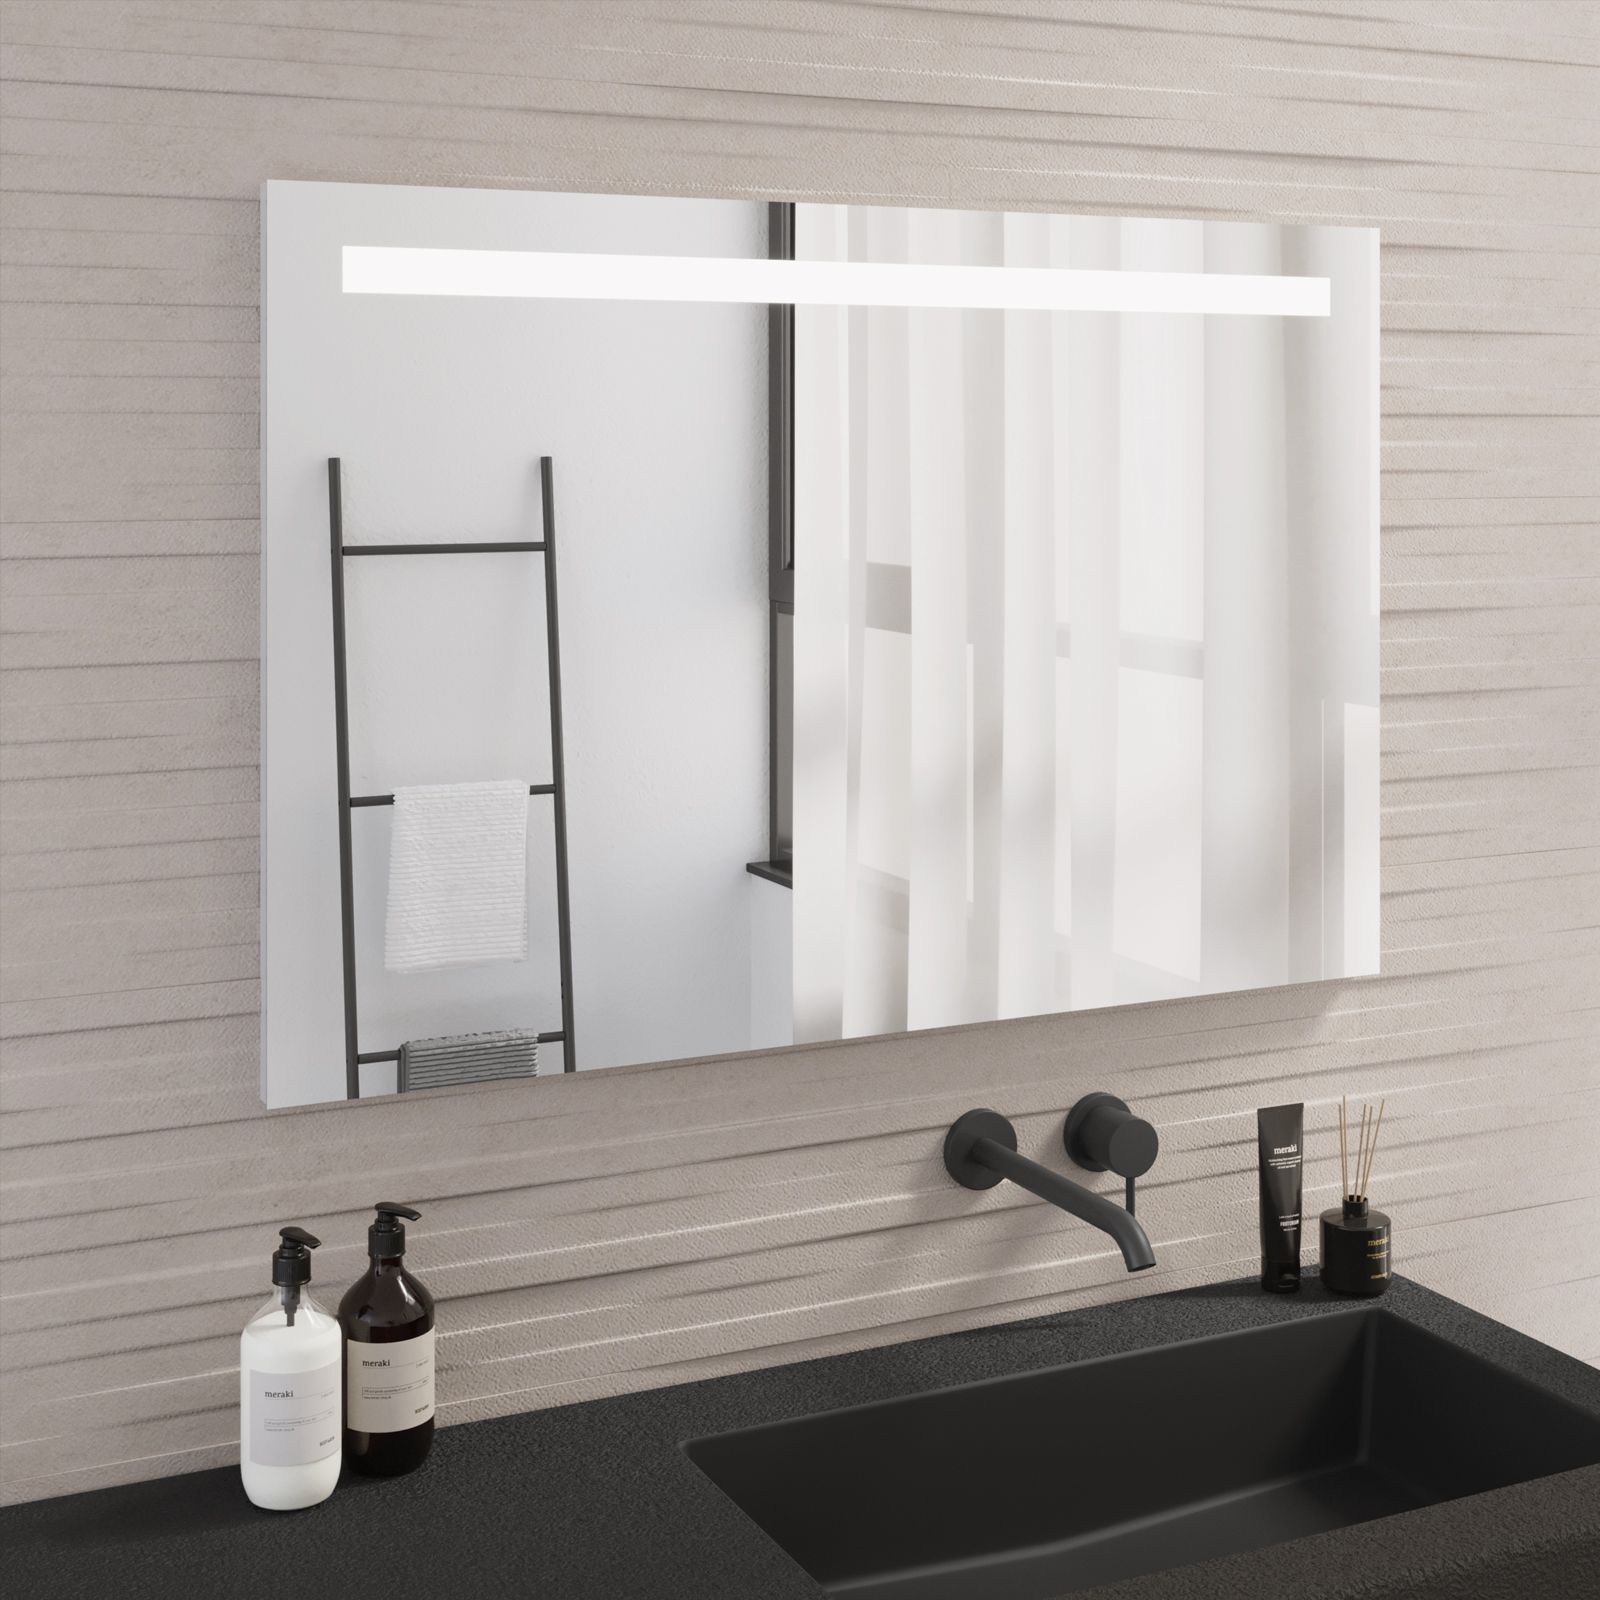 Specchio bagno 90x60 cm economico con lampada led